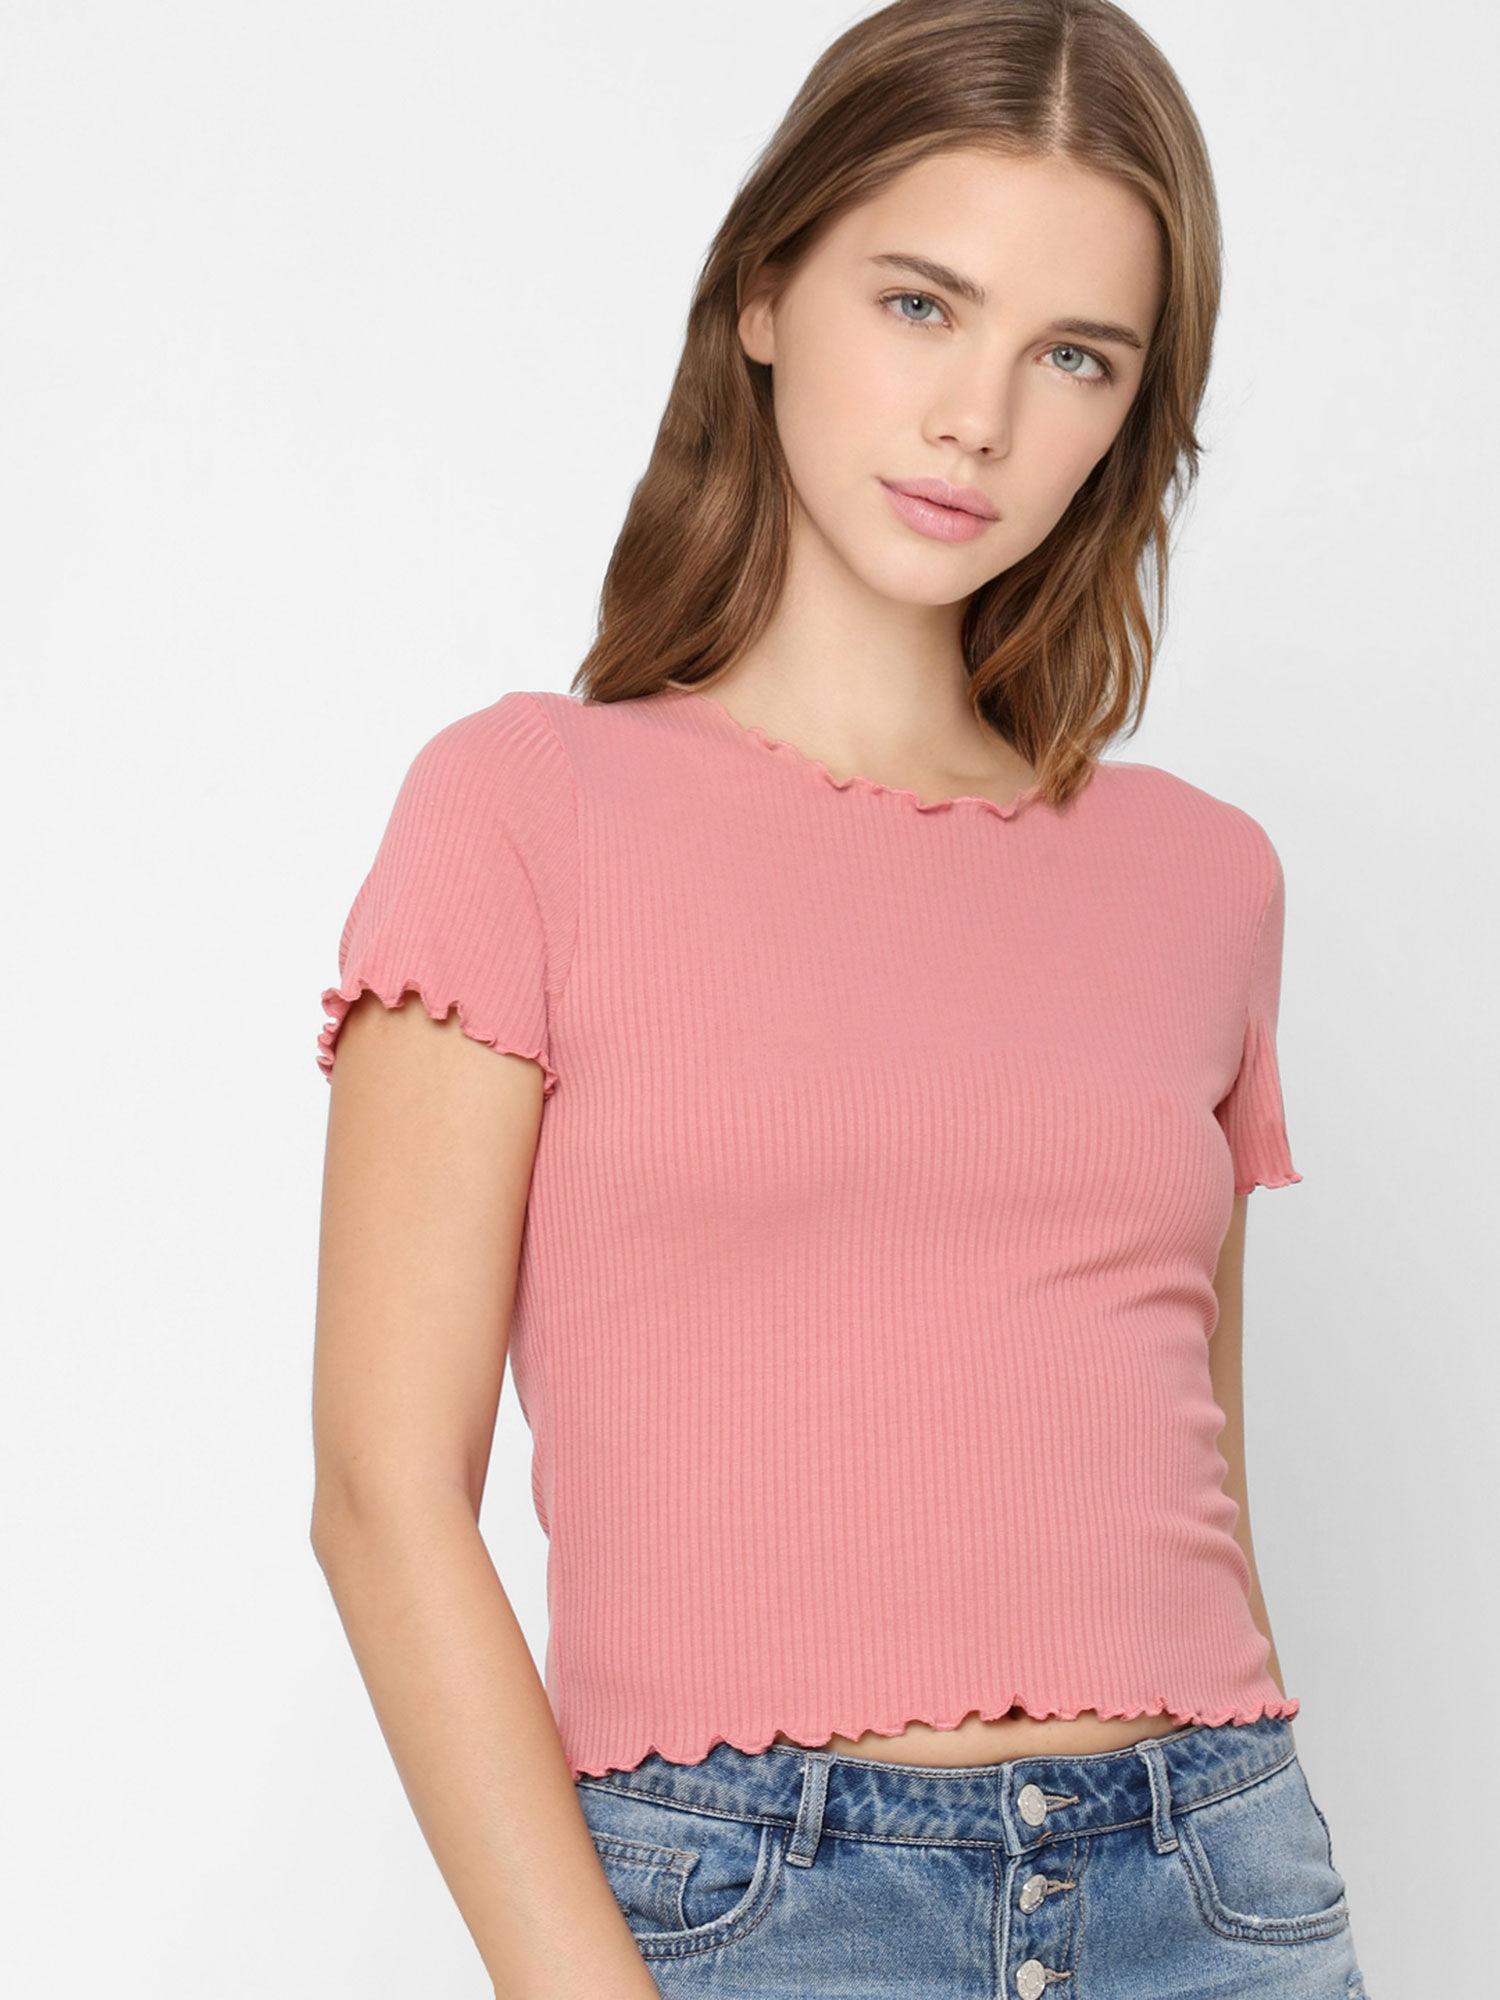 women-casual-wear-pink-t-shirt